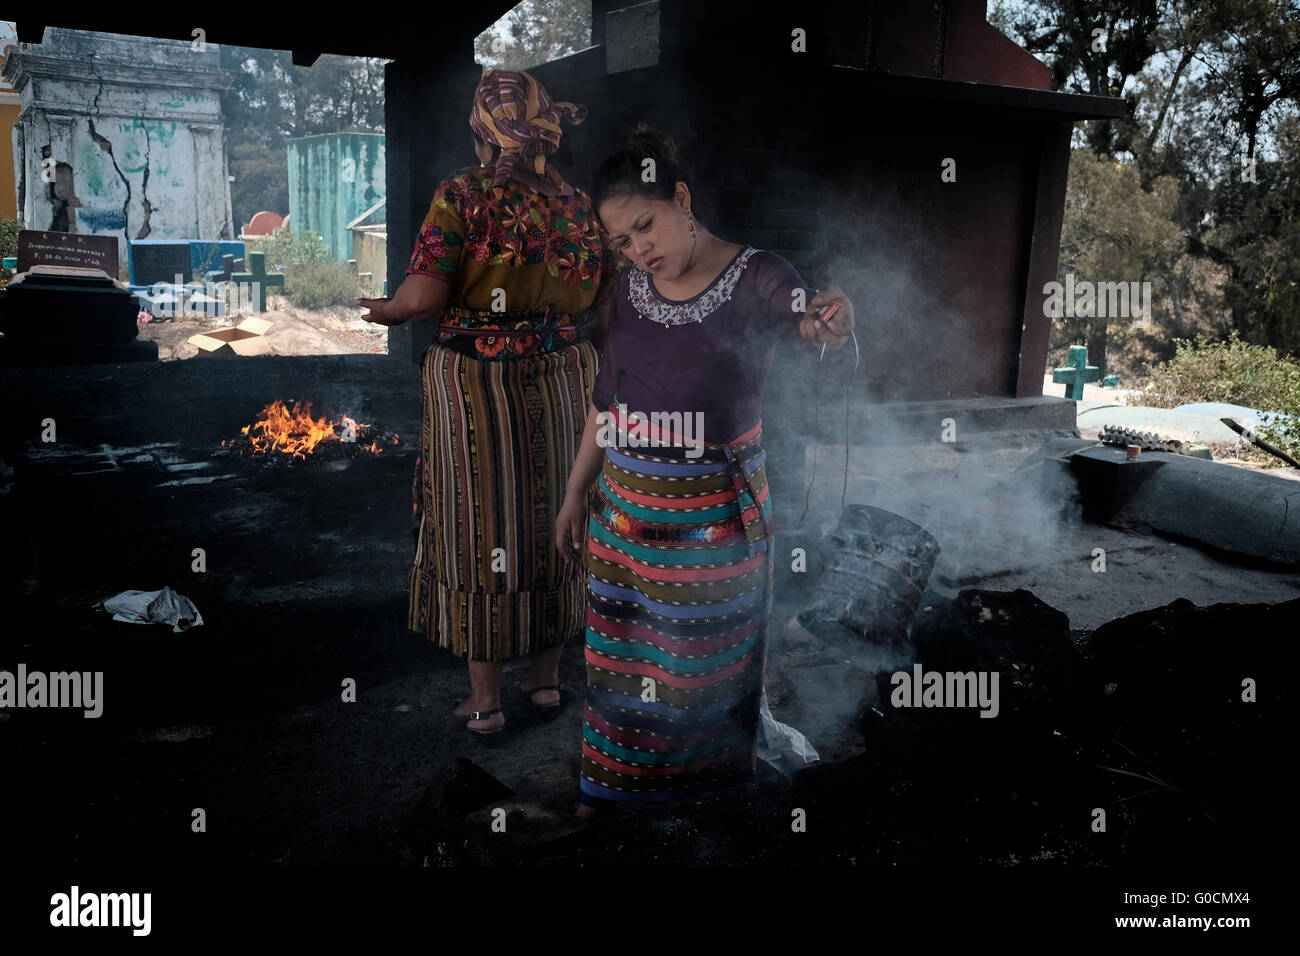 Femme locale effectuer une cérémonie maya K'iche encensoirs avec l'aide d'encens fumant au cimetière de Chichicastenango également connu sous le nom de Santo Tomás Chichicastenango une ville dans le département de Guatemala El Quiché, connu pour sa culture Maya Kiche traditionnels. Banque D'Images